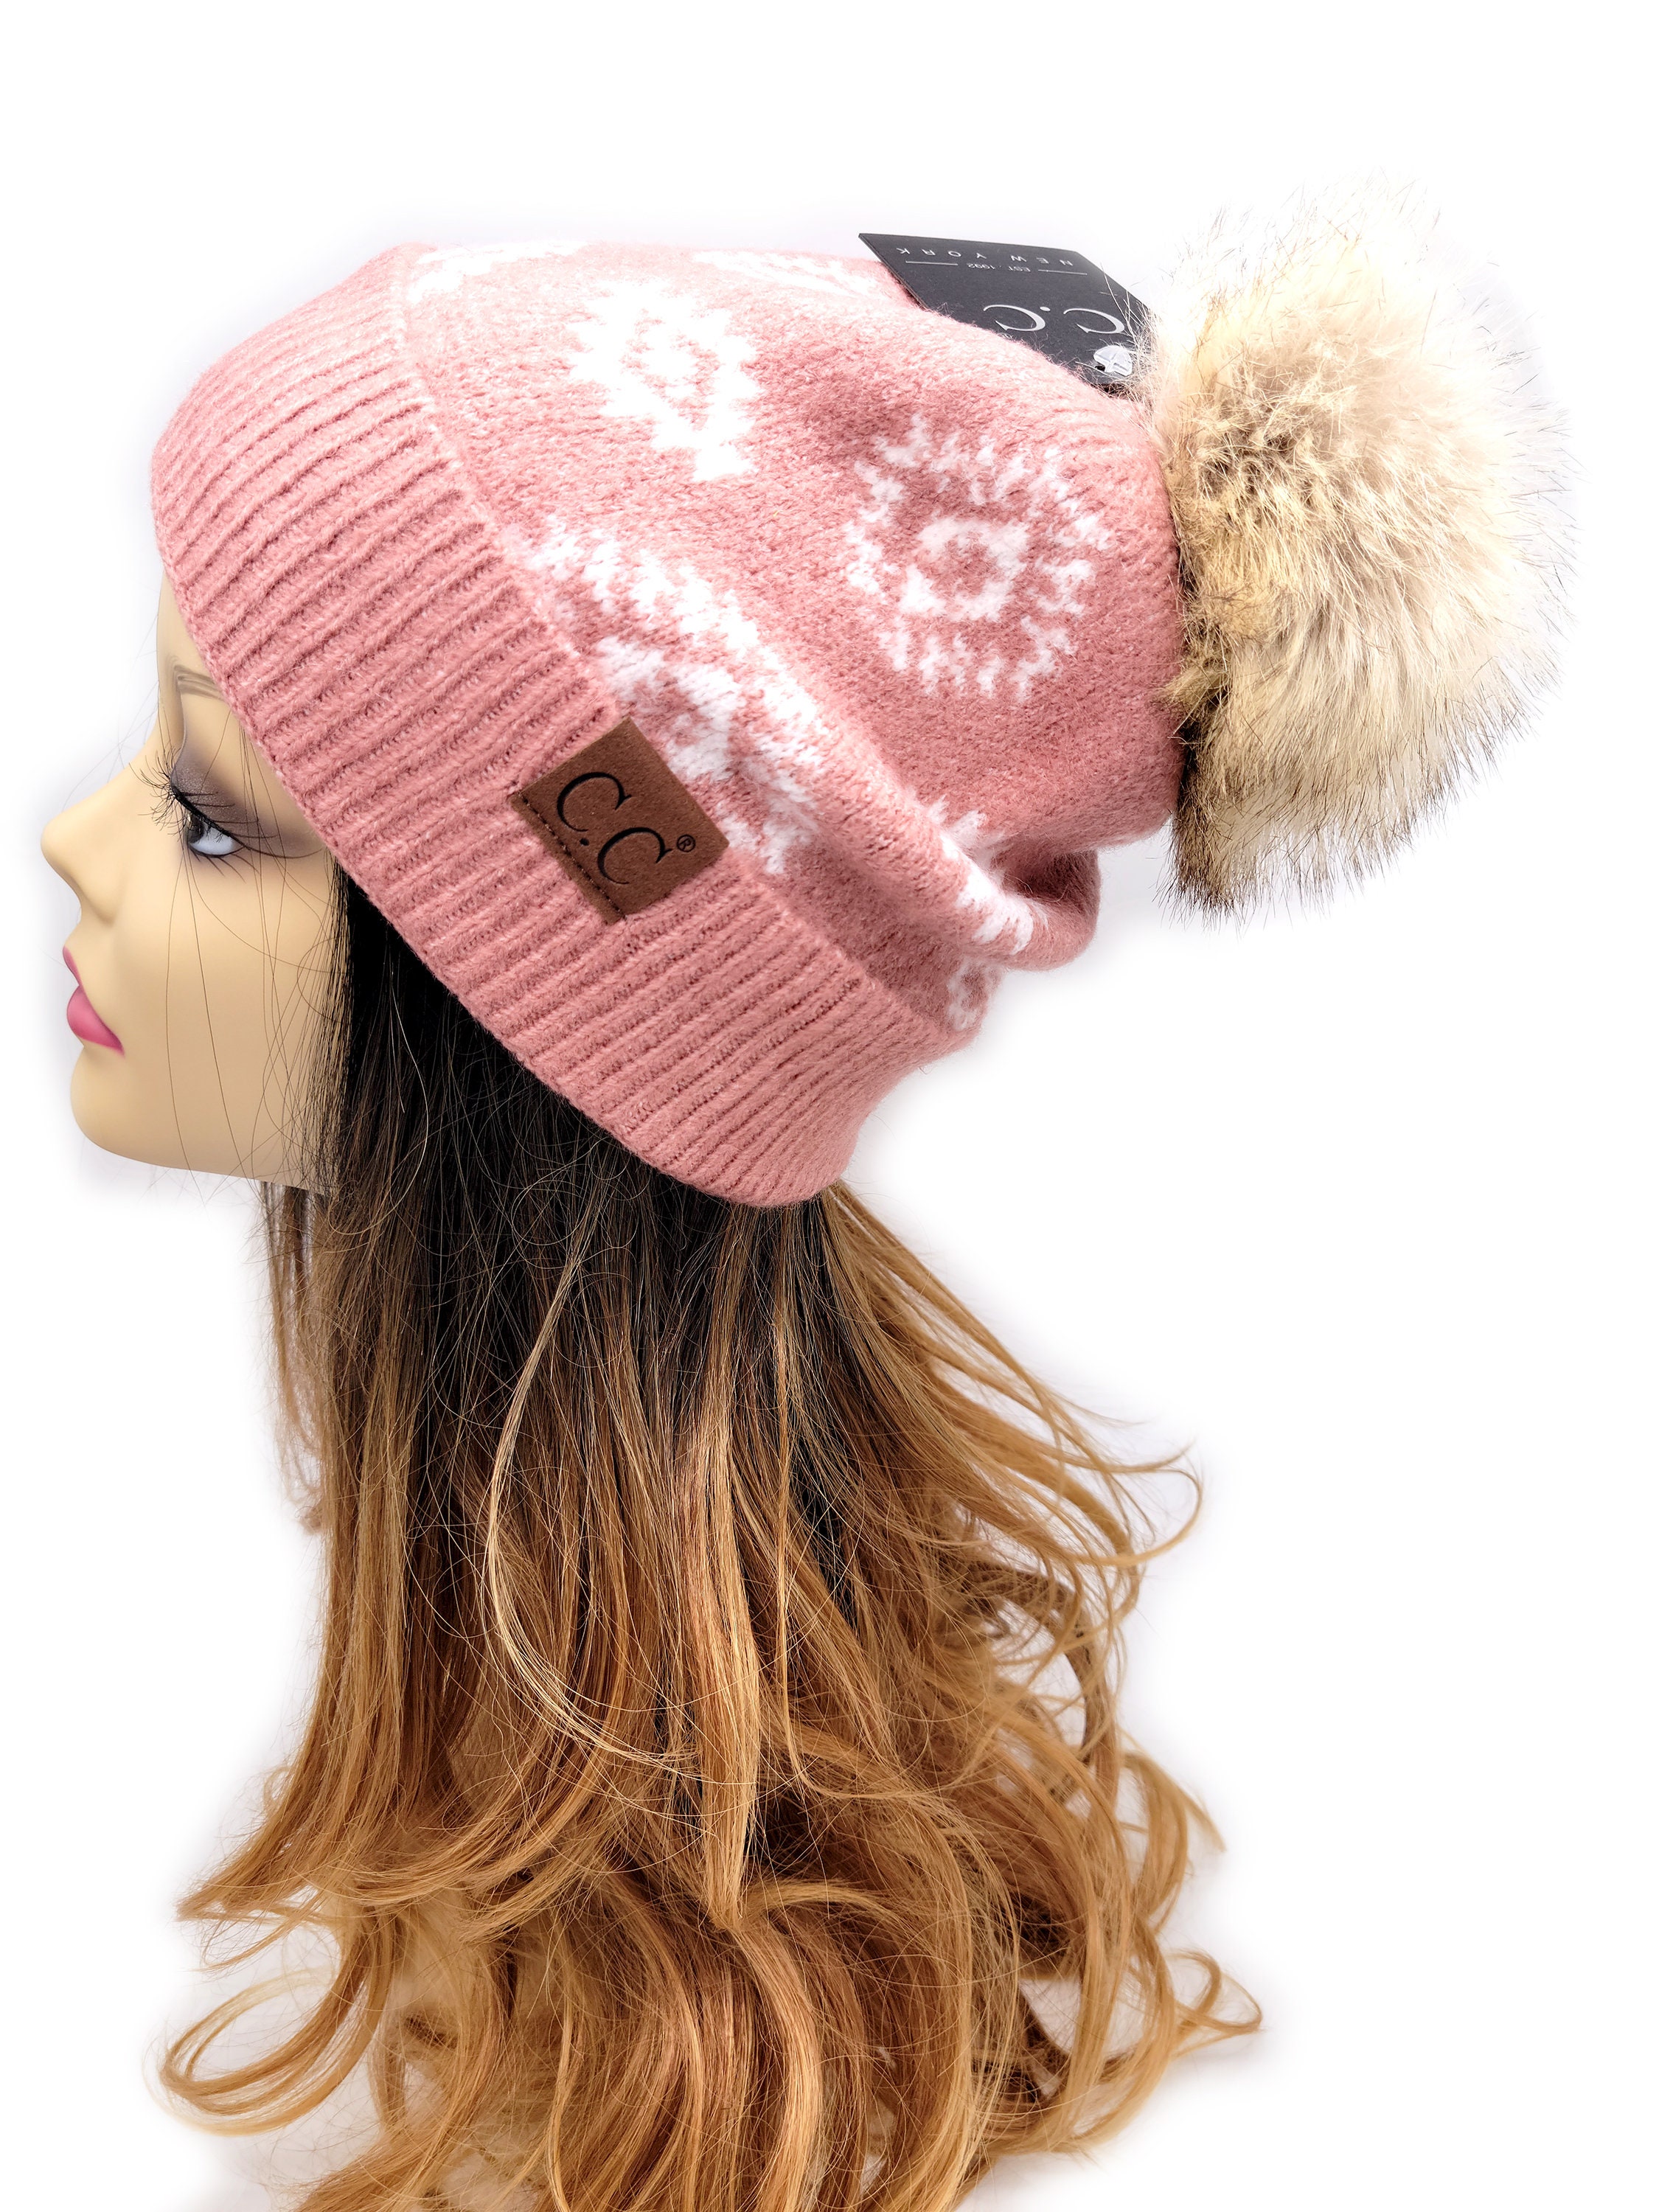 Aztec Pink & Denim Faux Fur Pom-Pom Beanie Hat